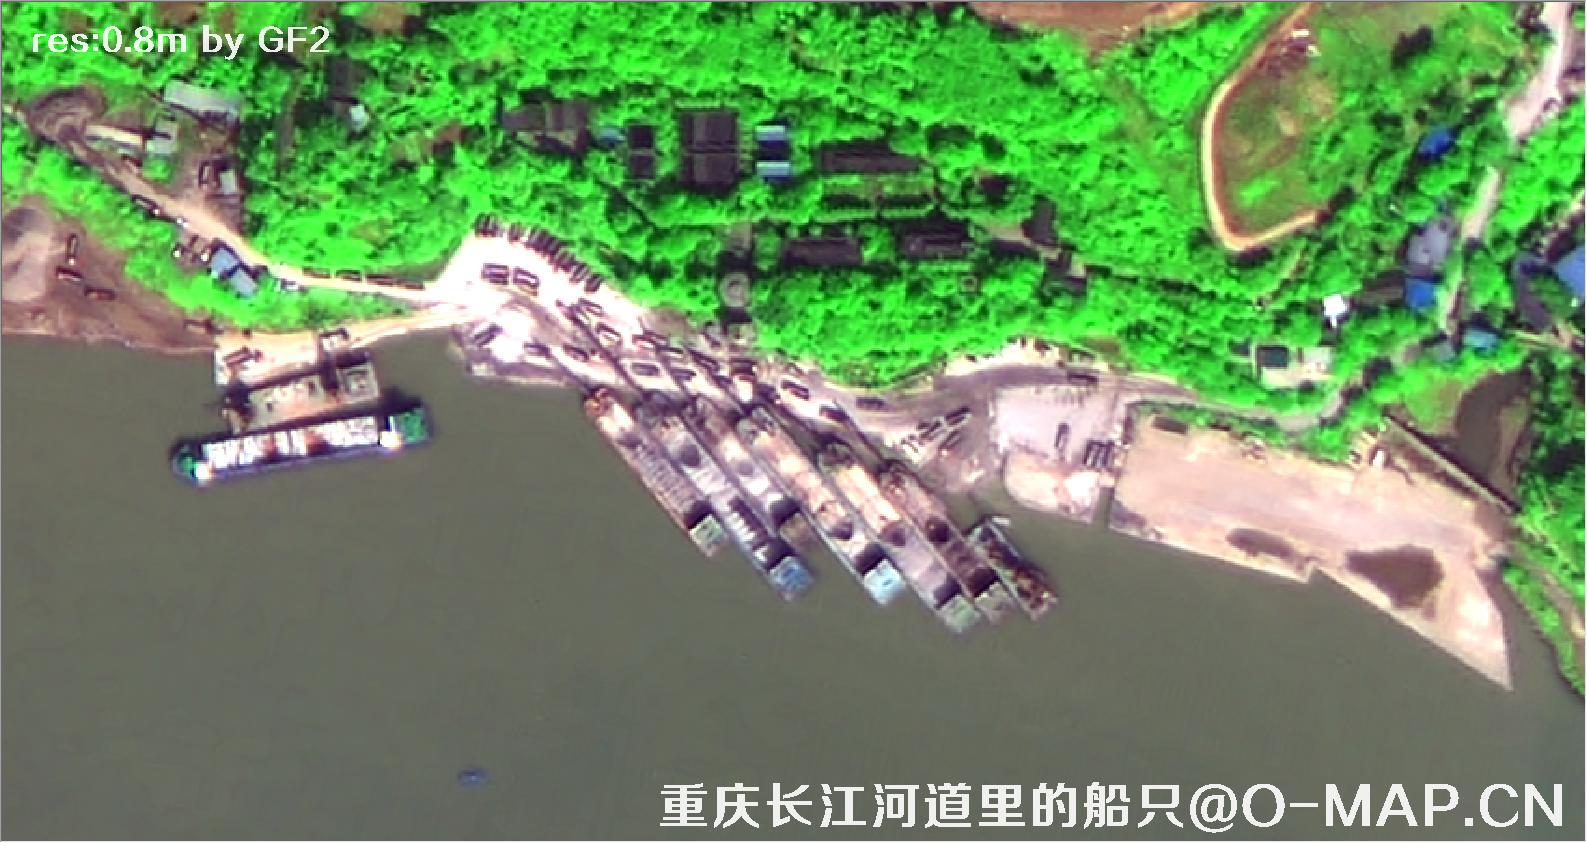 0.8米分辨率卫星拍摄的重庆市长江河道船只卫星图